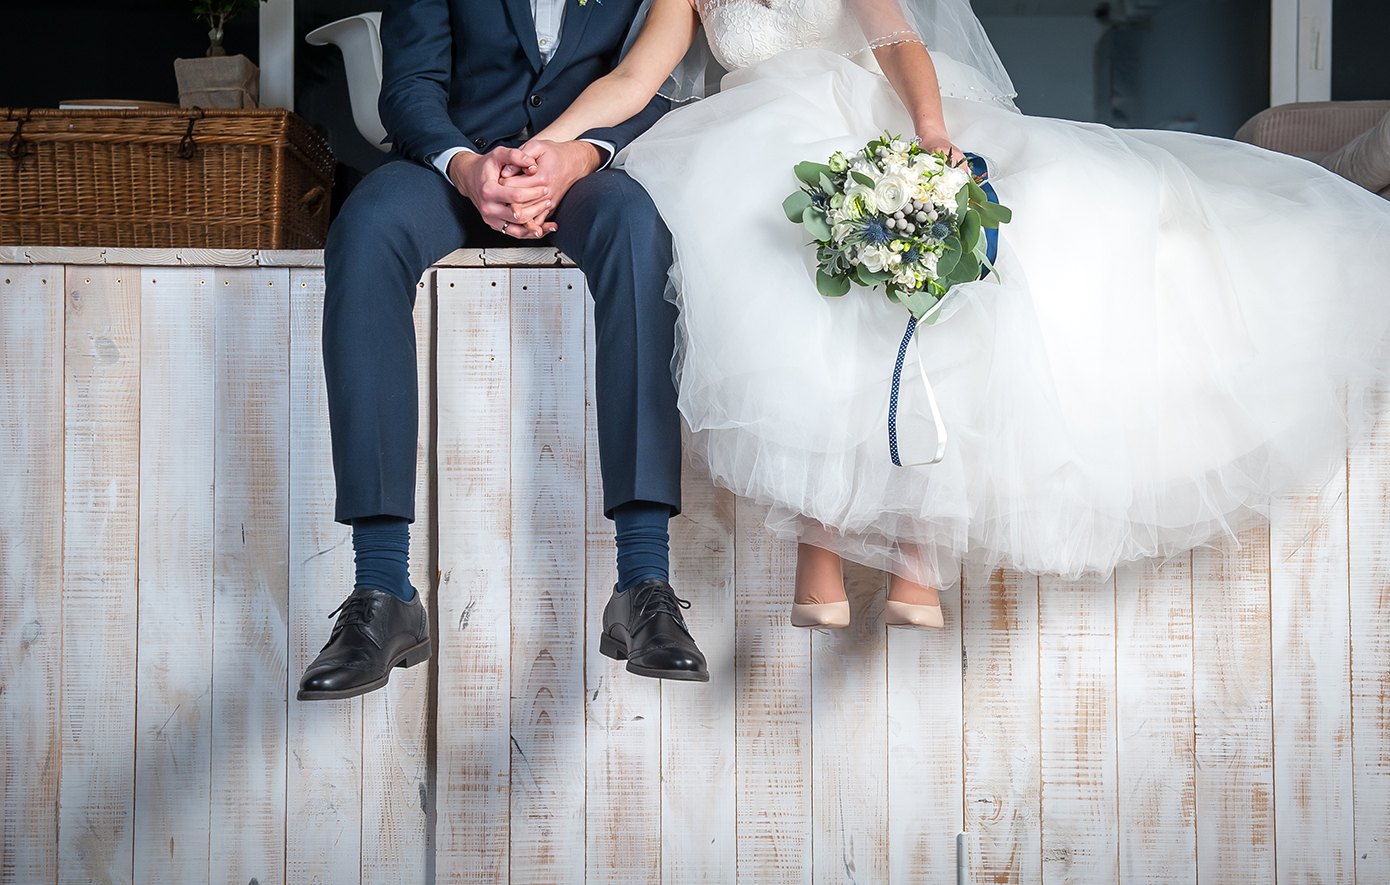 Τσιγκούνης γαμπρός μετέτρεψε σε ρινγκ τη γαμήλια δεξίωση – Έβρισε τη νύφη, έδειρε καλεσμένους και έφυγε με χειροπέδες